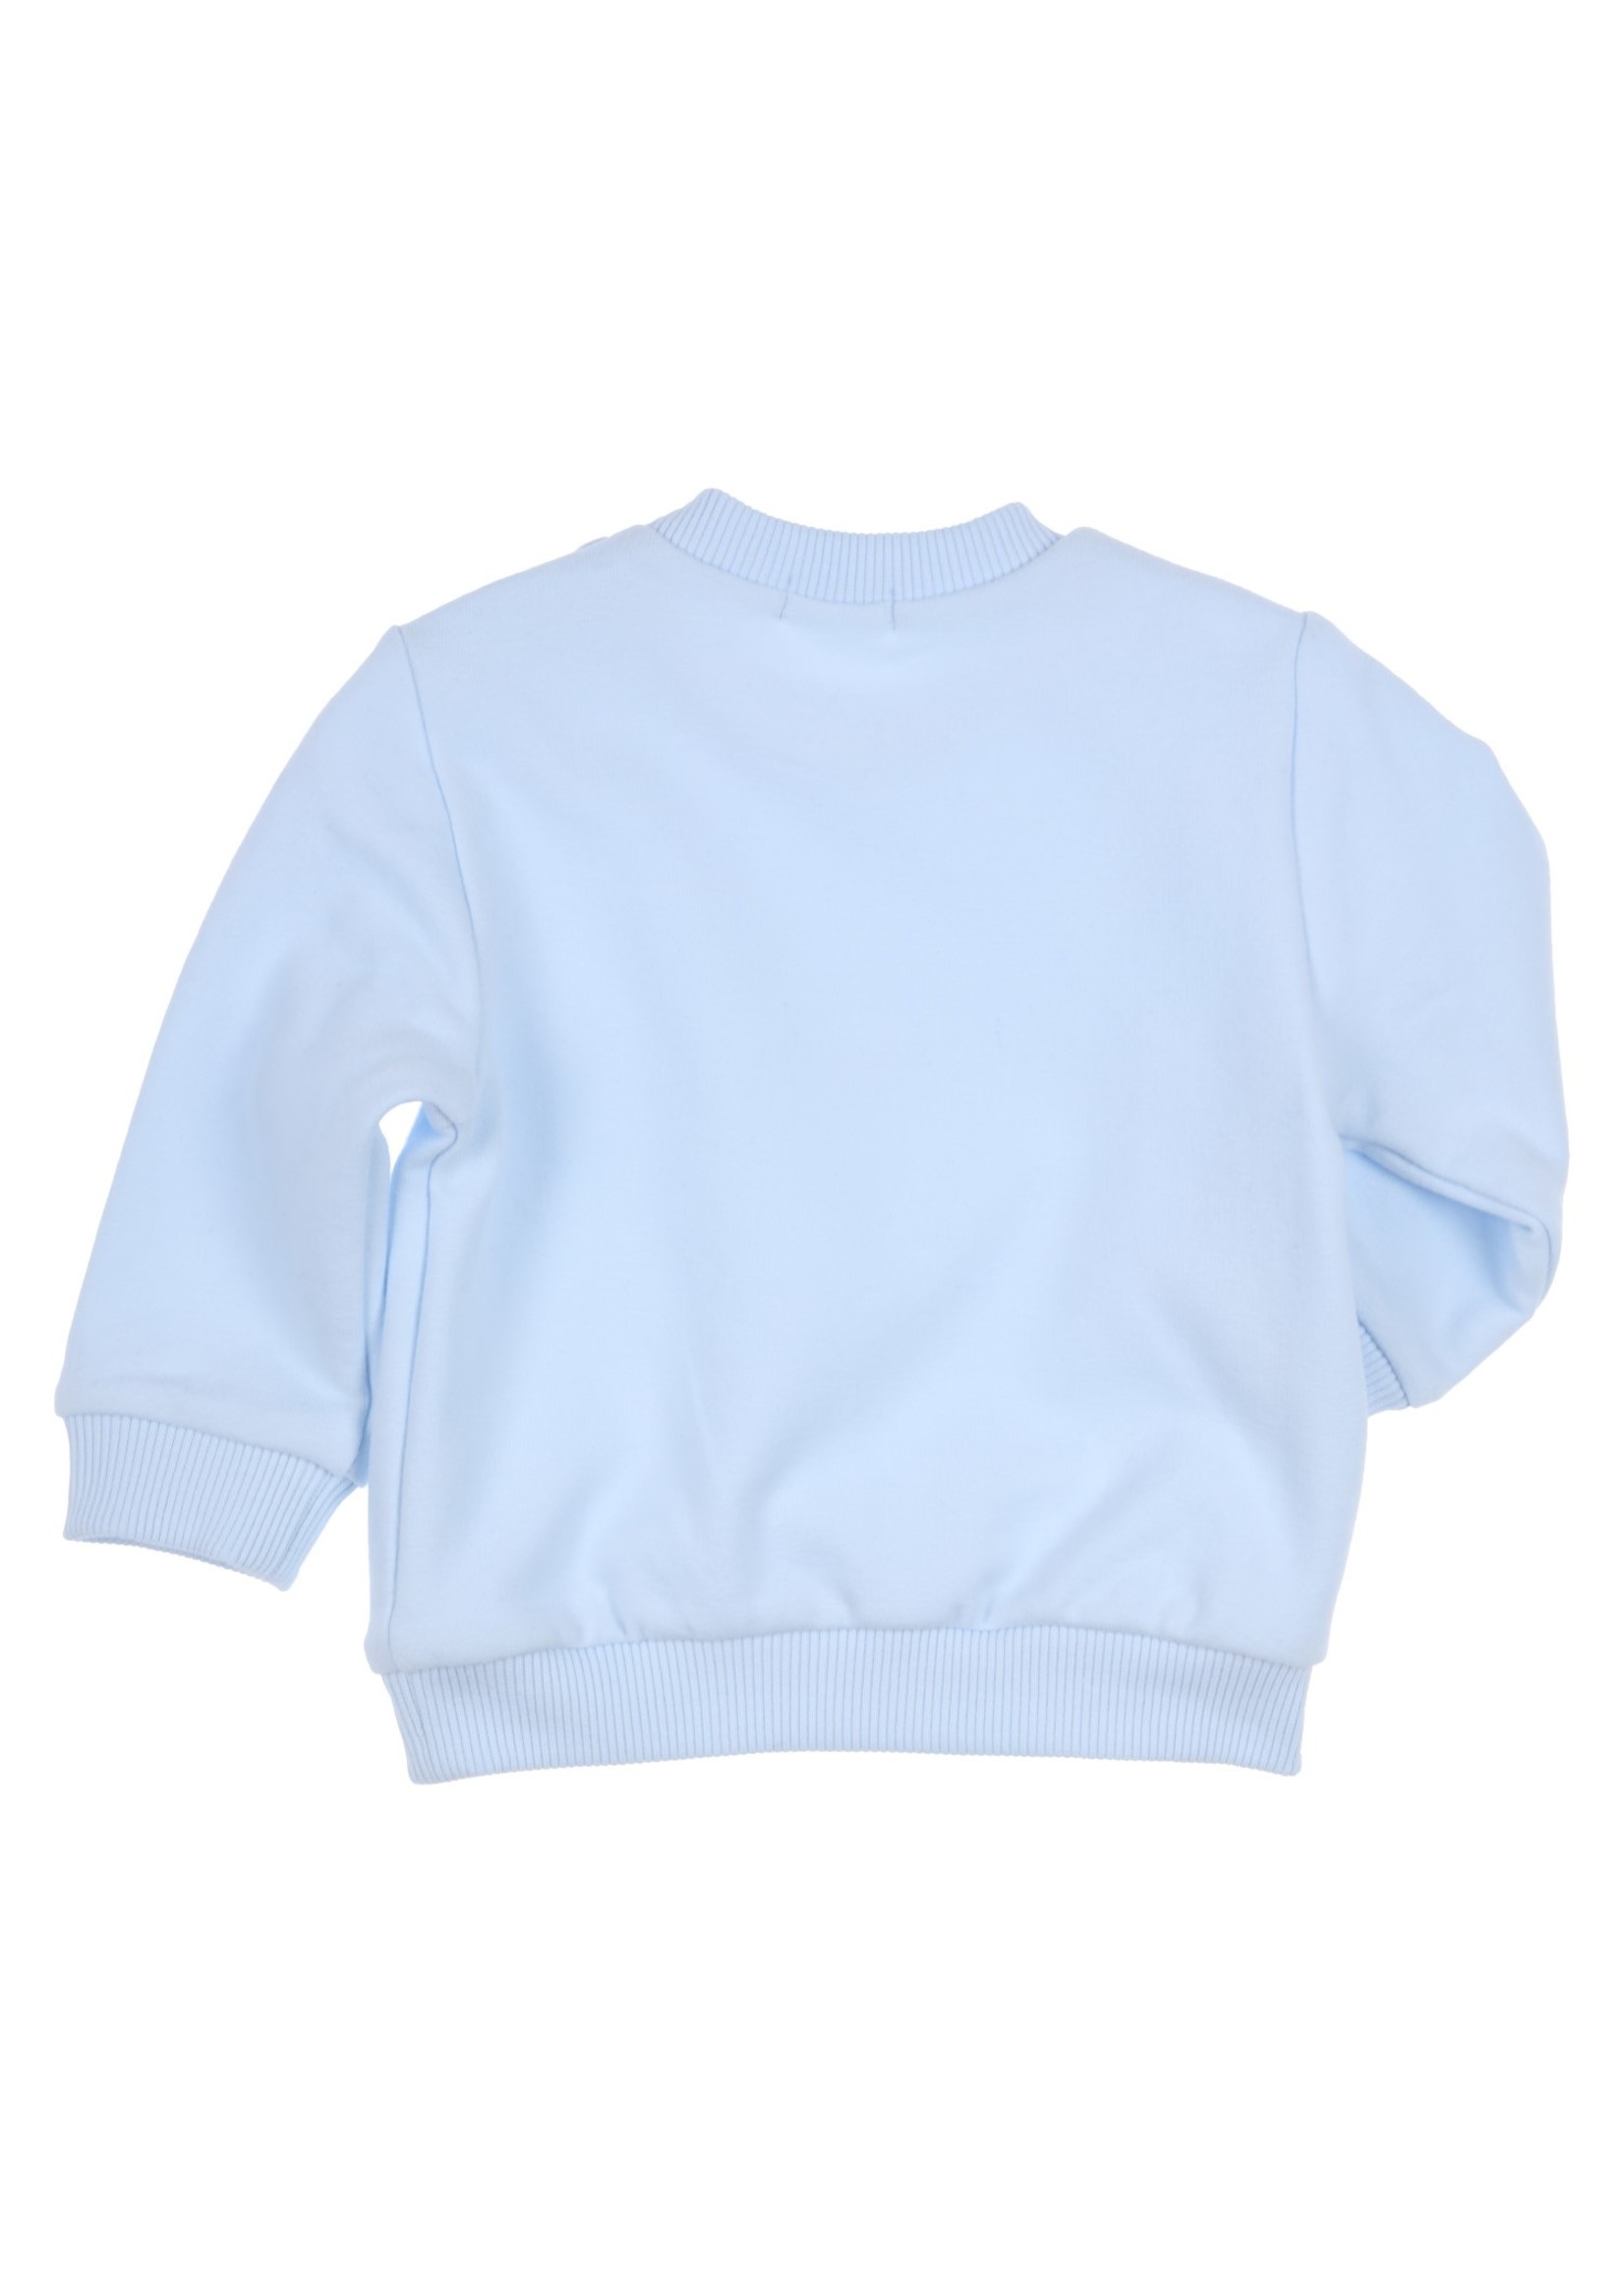 Gymp Sweater Carbondoux - Little But Loud Light Blue